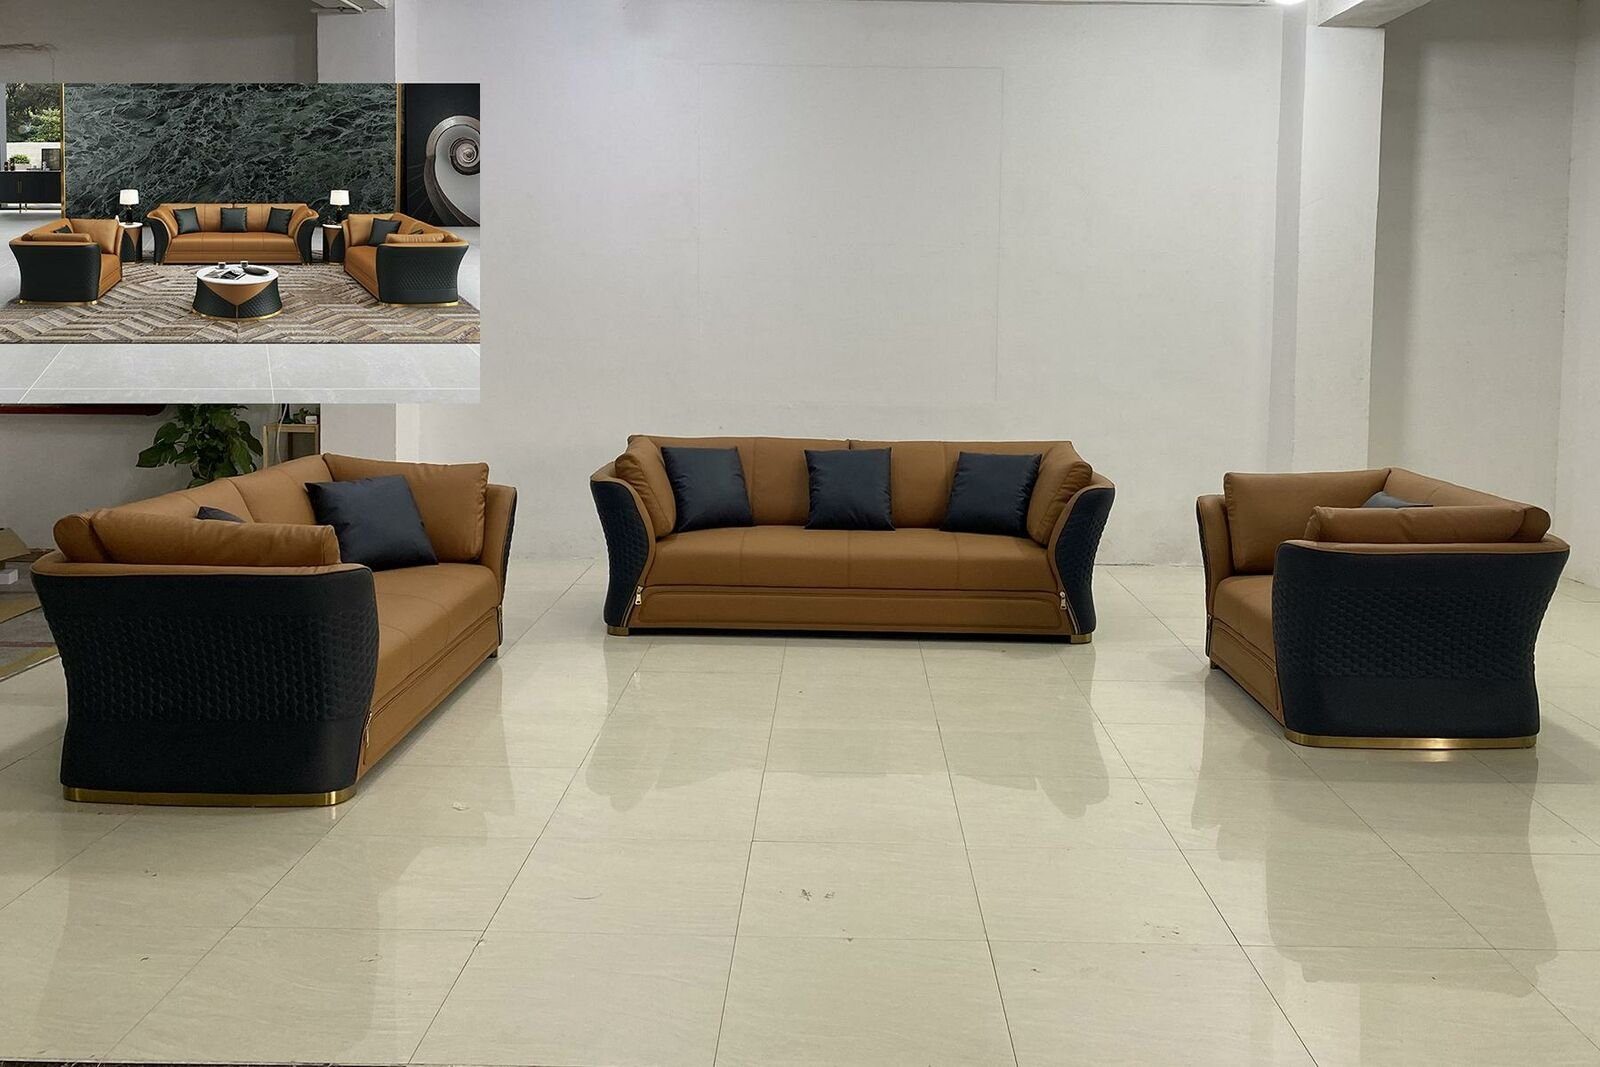 Neu, Schwarz/Braun Sofa Sitzer Polstermöbel Luxus in Leder Made 3+2+1 Sitzgarnitur Europe JVmoebel